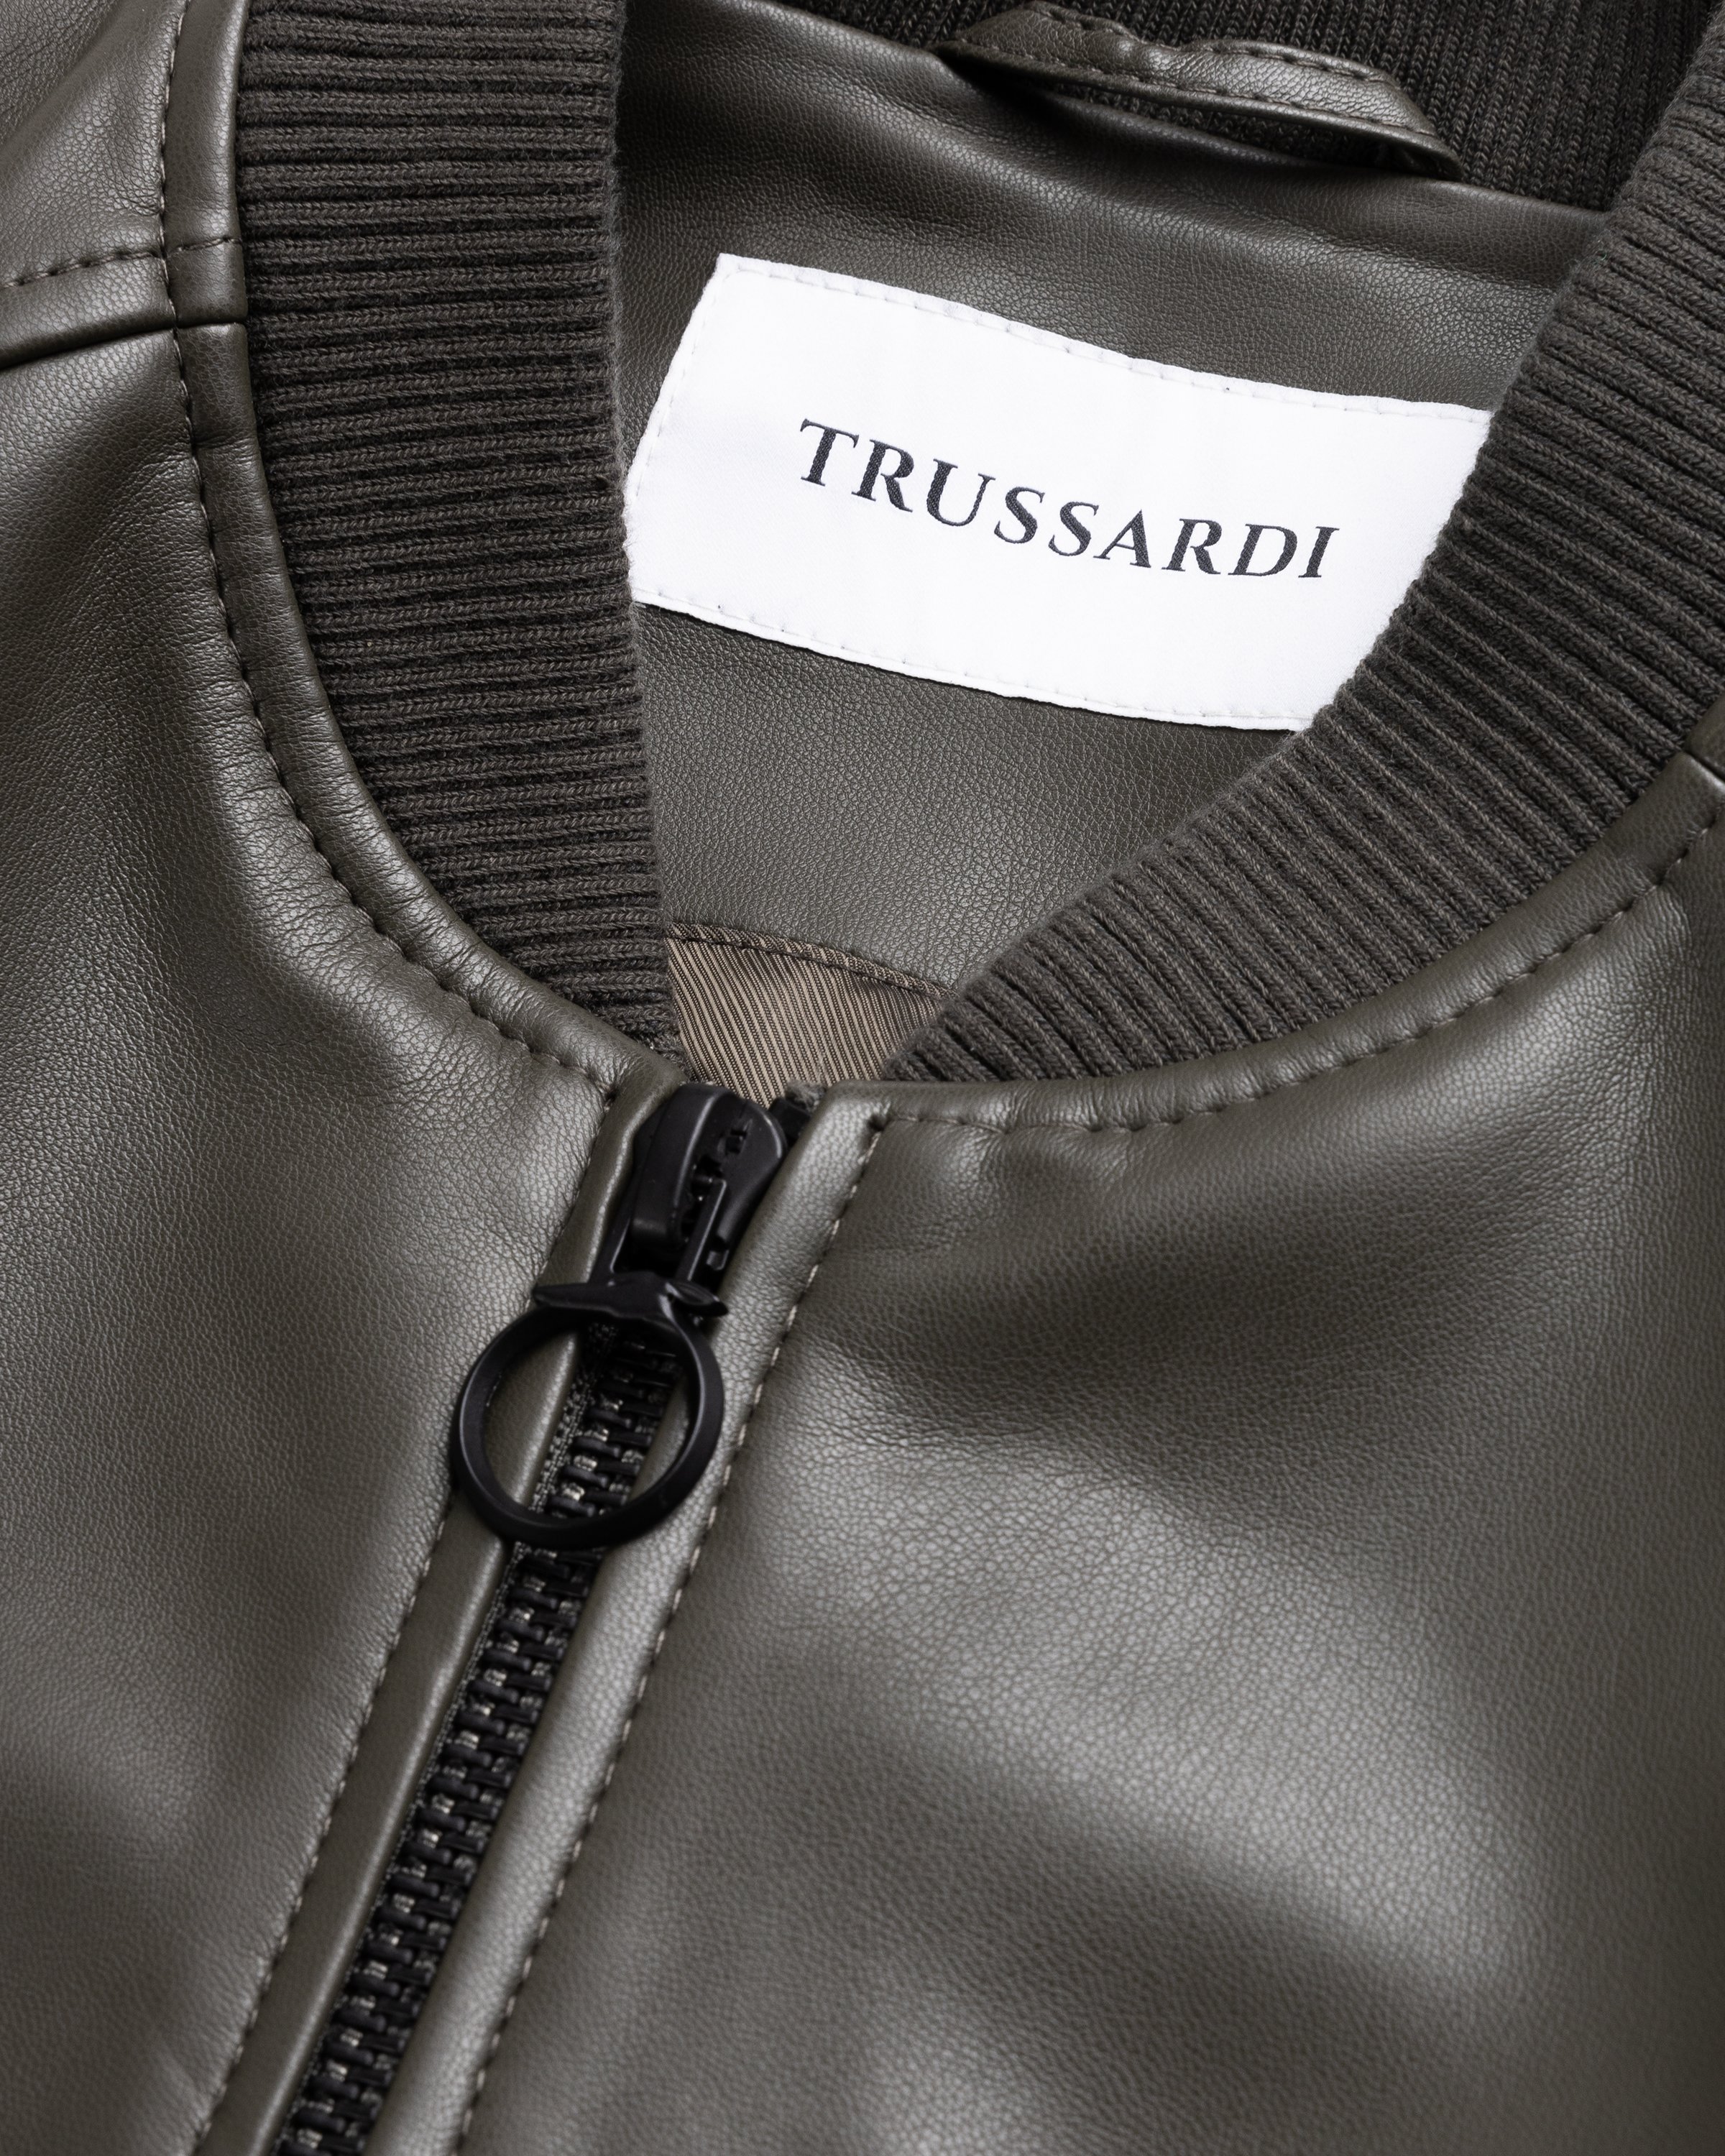 Trussardi - Jacket Faux Leather Bonded - Clothing - Green - Image 5